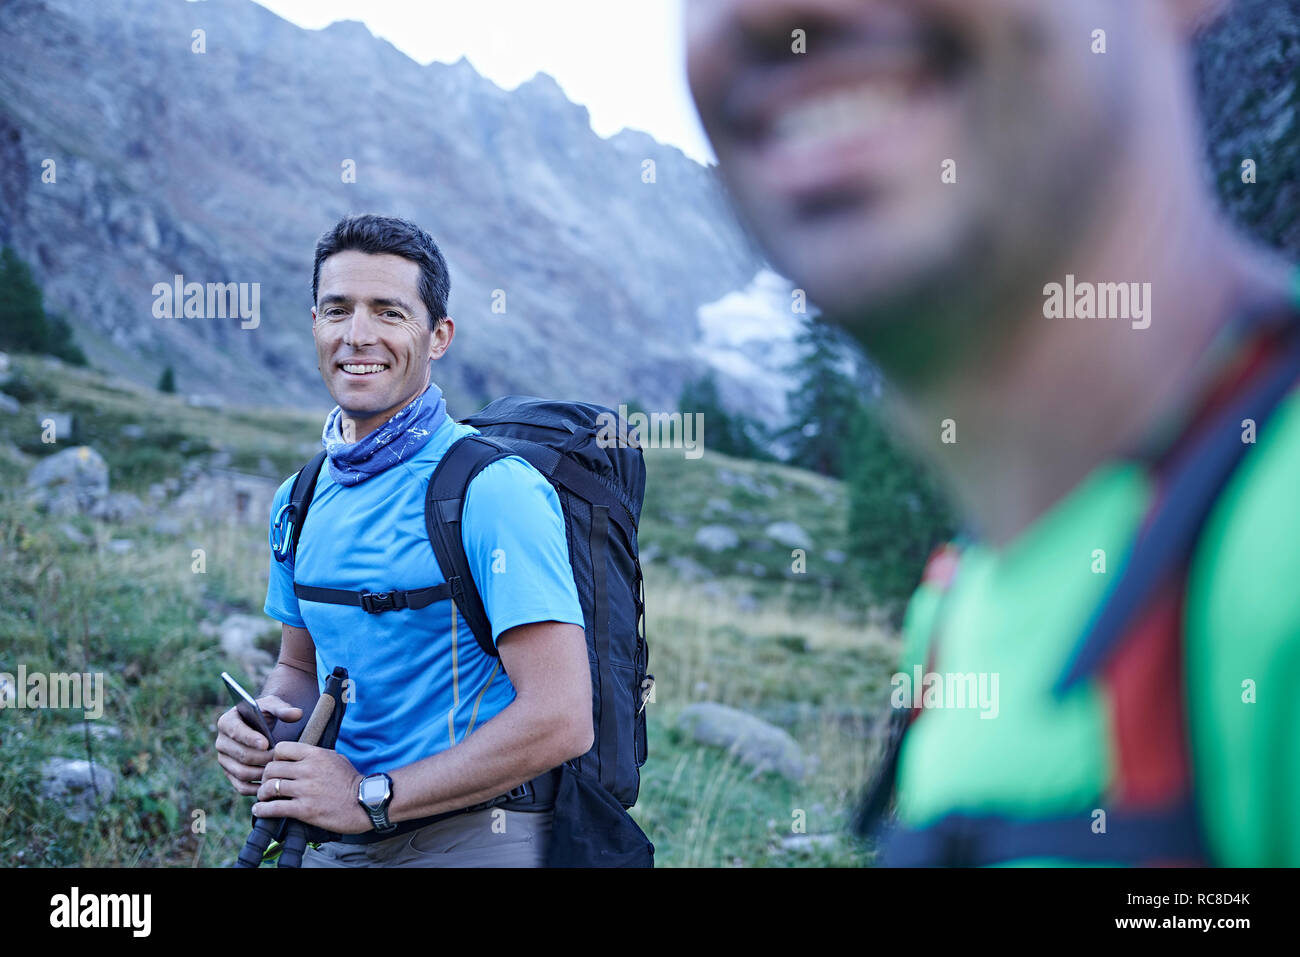 Excursionista sonrientes amigos, Mont Cervin, Cervino, Valais, Suiza Foto de stock